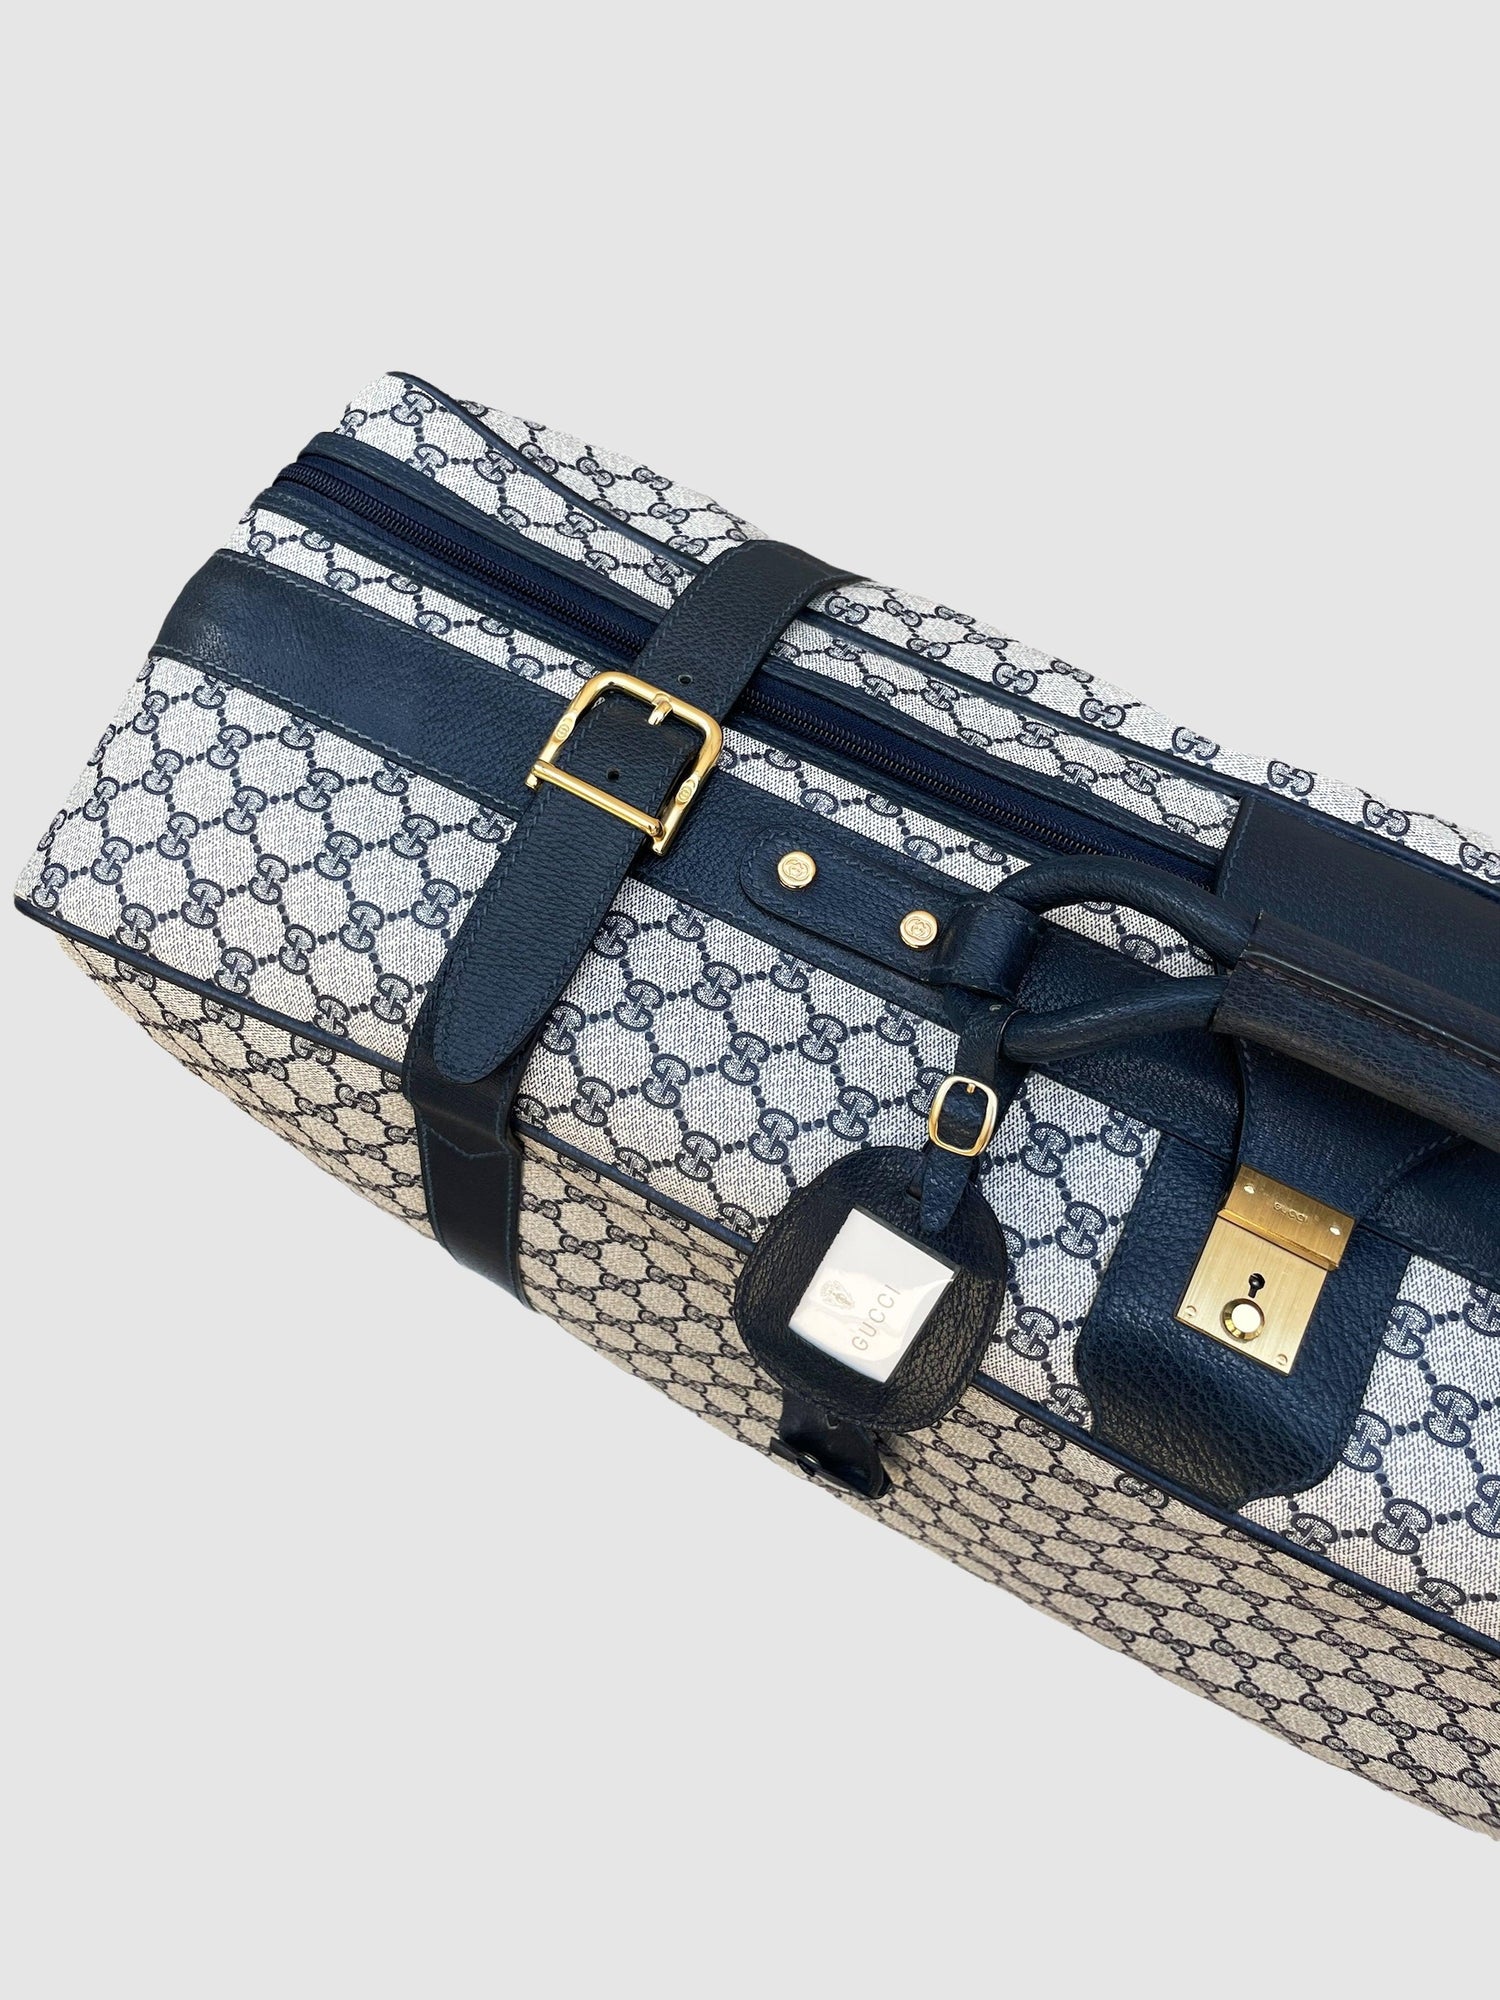 Gucci Vintage Suitcase Travel Bag Large - Second Nature Boutique